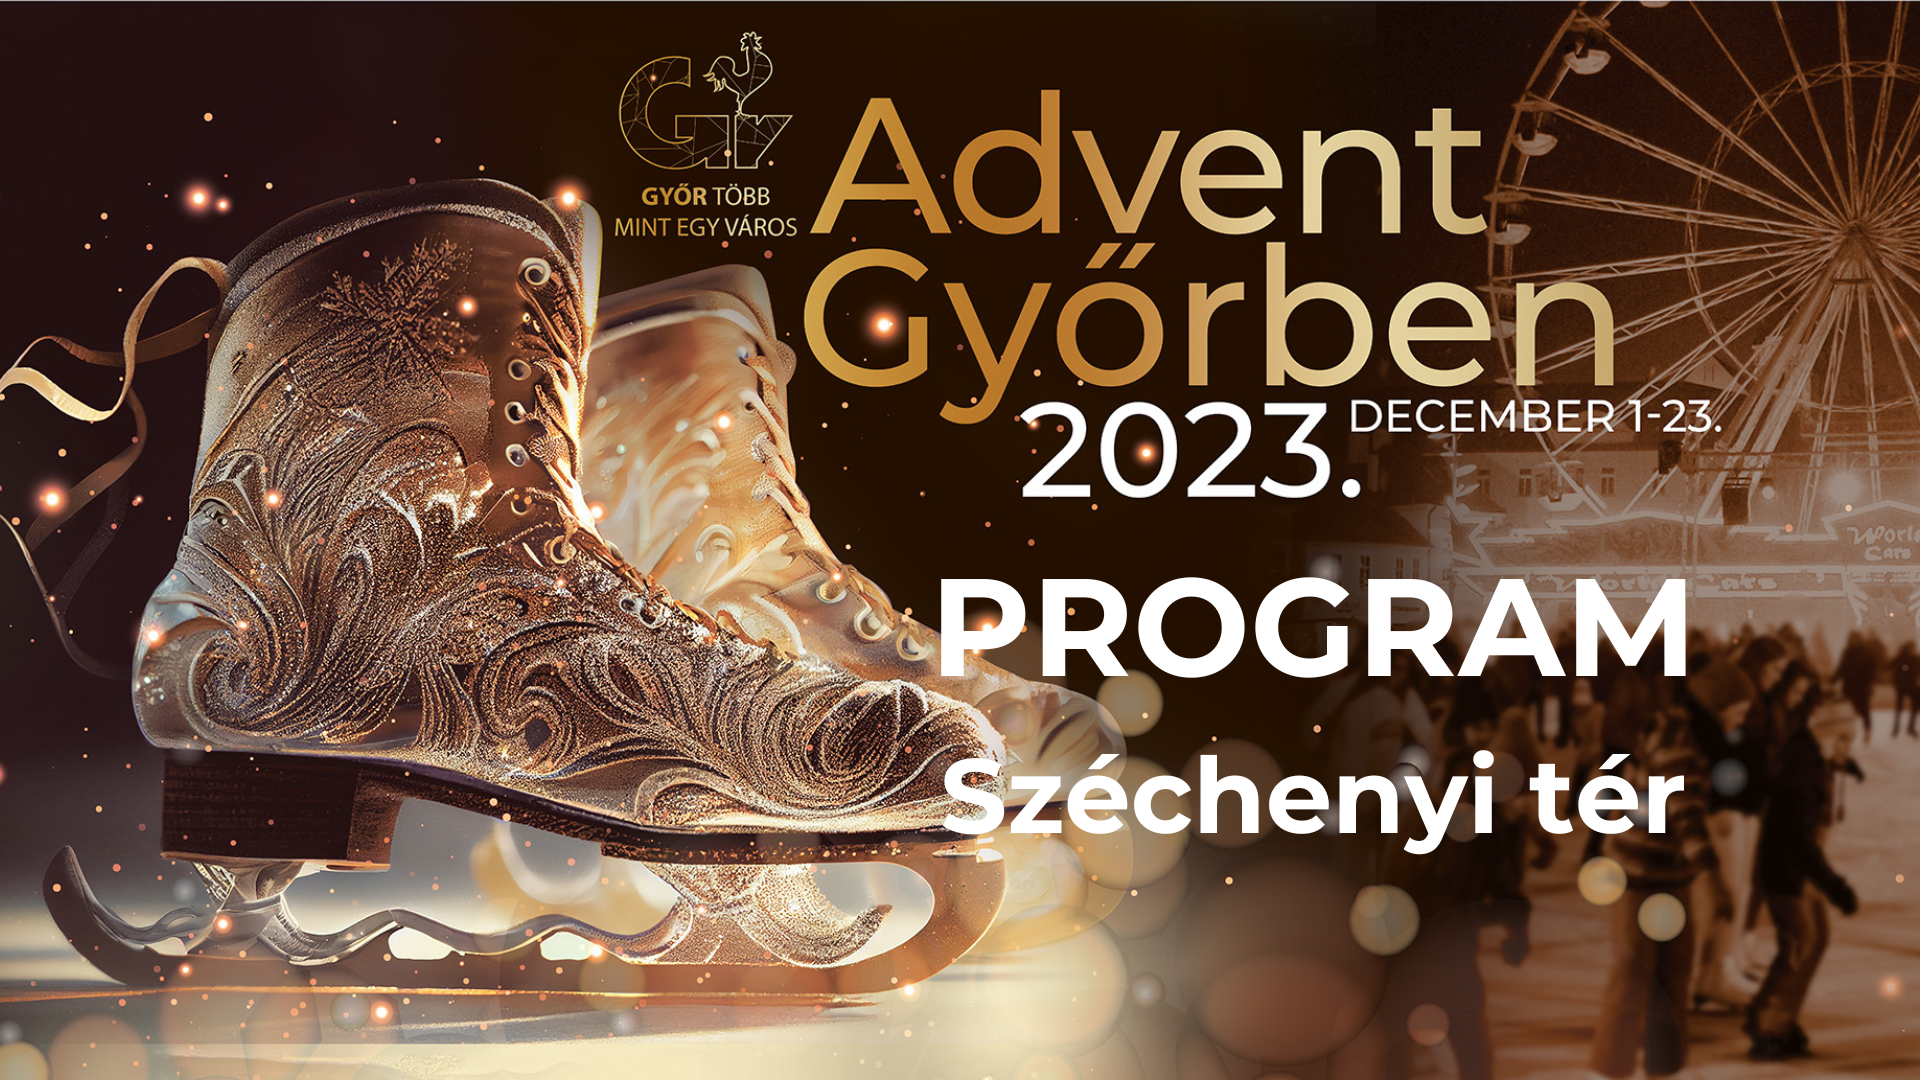 Advent Győrben 2023 - Program - Széchenyi tér